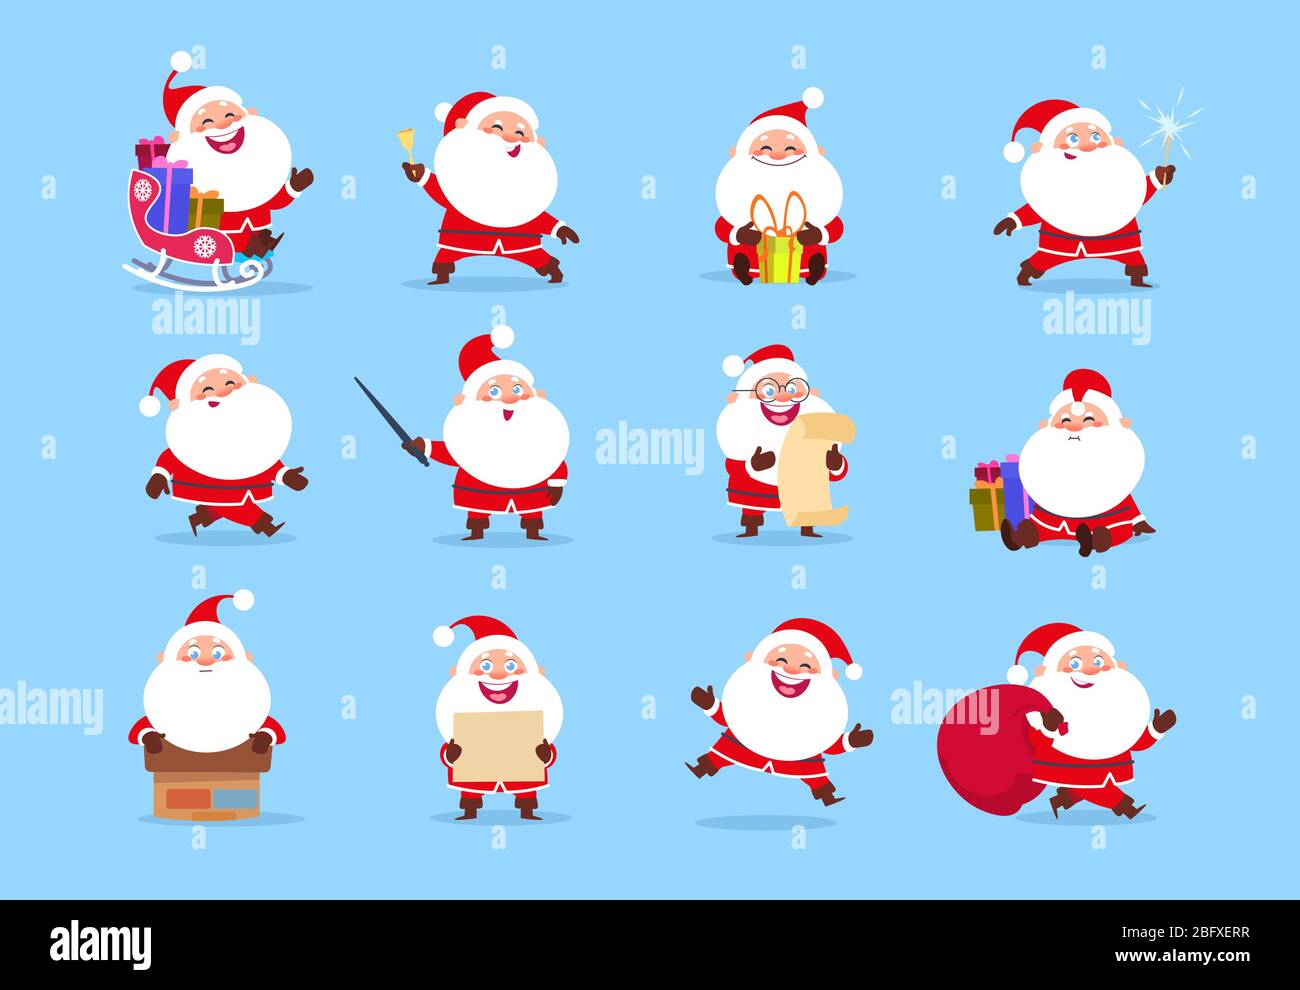 Santa-Charakter. Lustige Cartoon niedlichen weihnachtsmann Charaktere mit verschiedenen Emotionen, Vektor-Element für weihnachten Grußkarte. Illustration von Weihnachten Charakter Freude und glücklich Stock Vektor